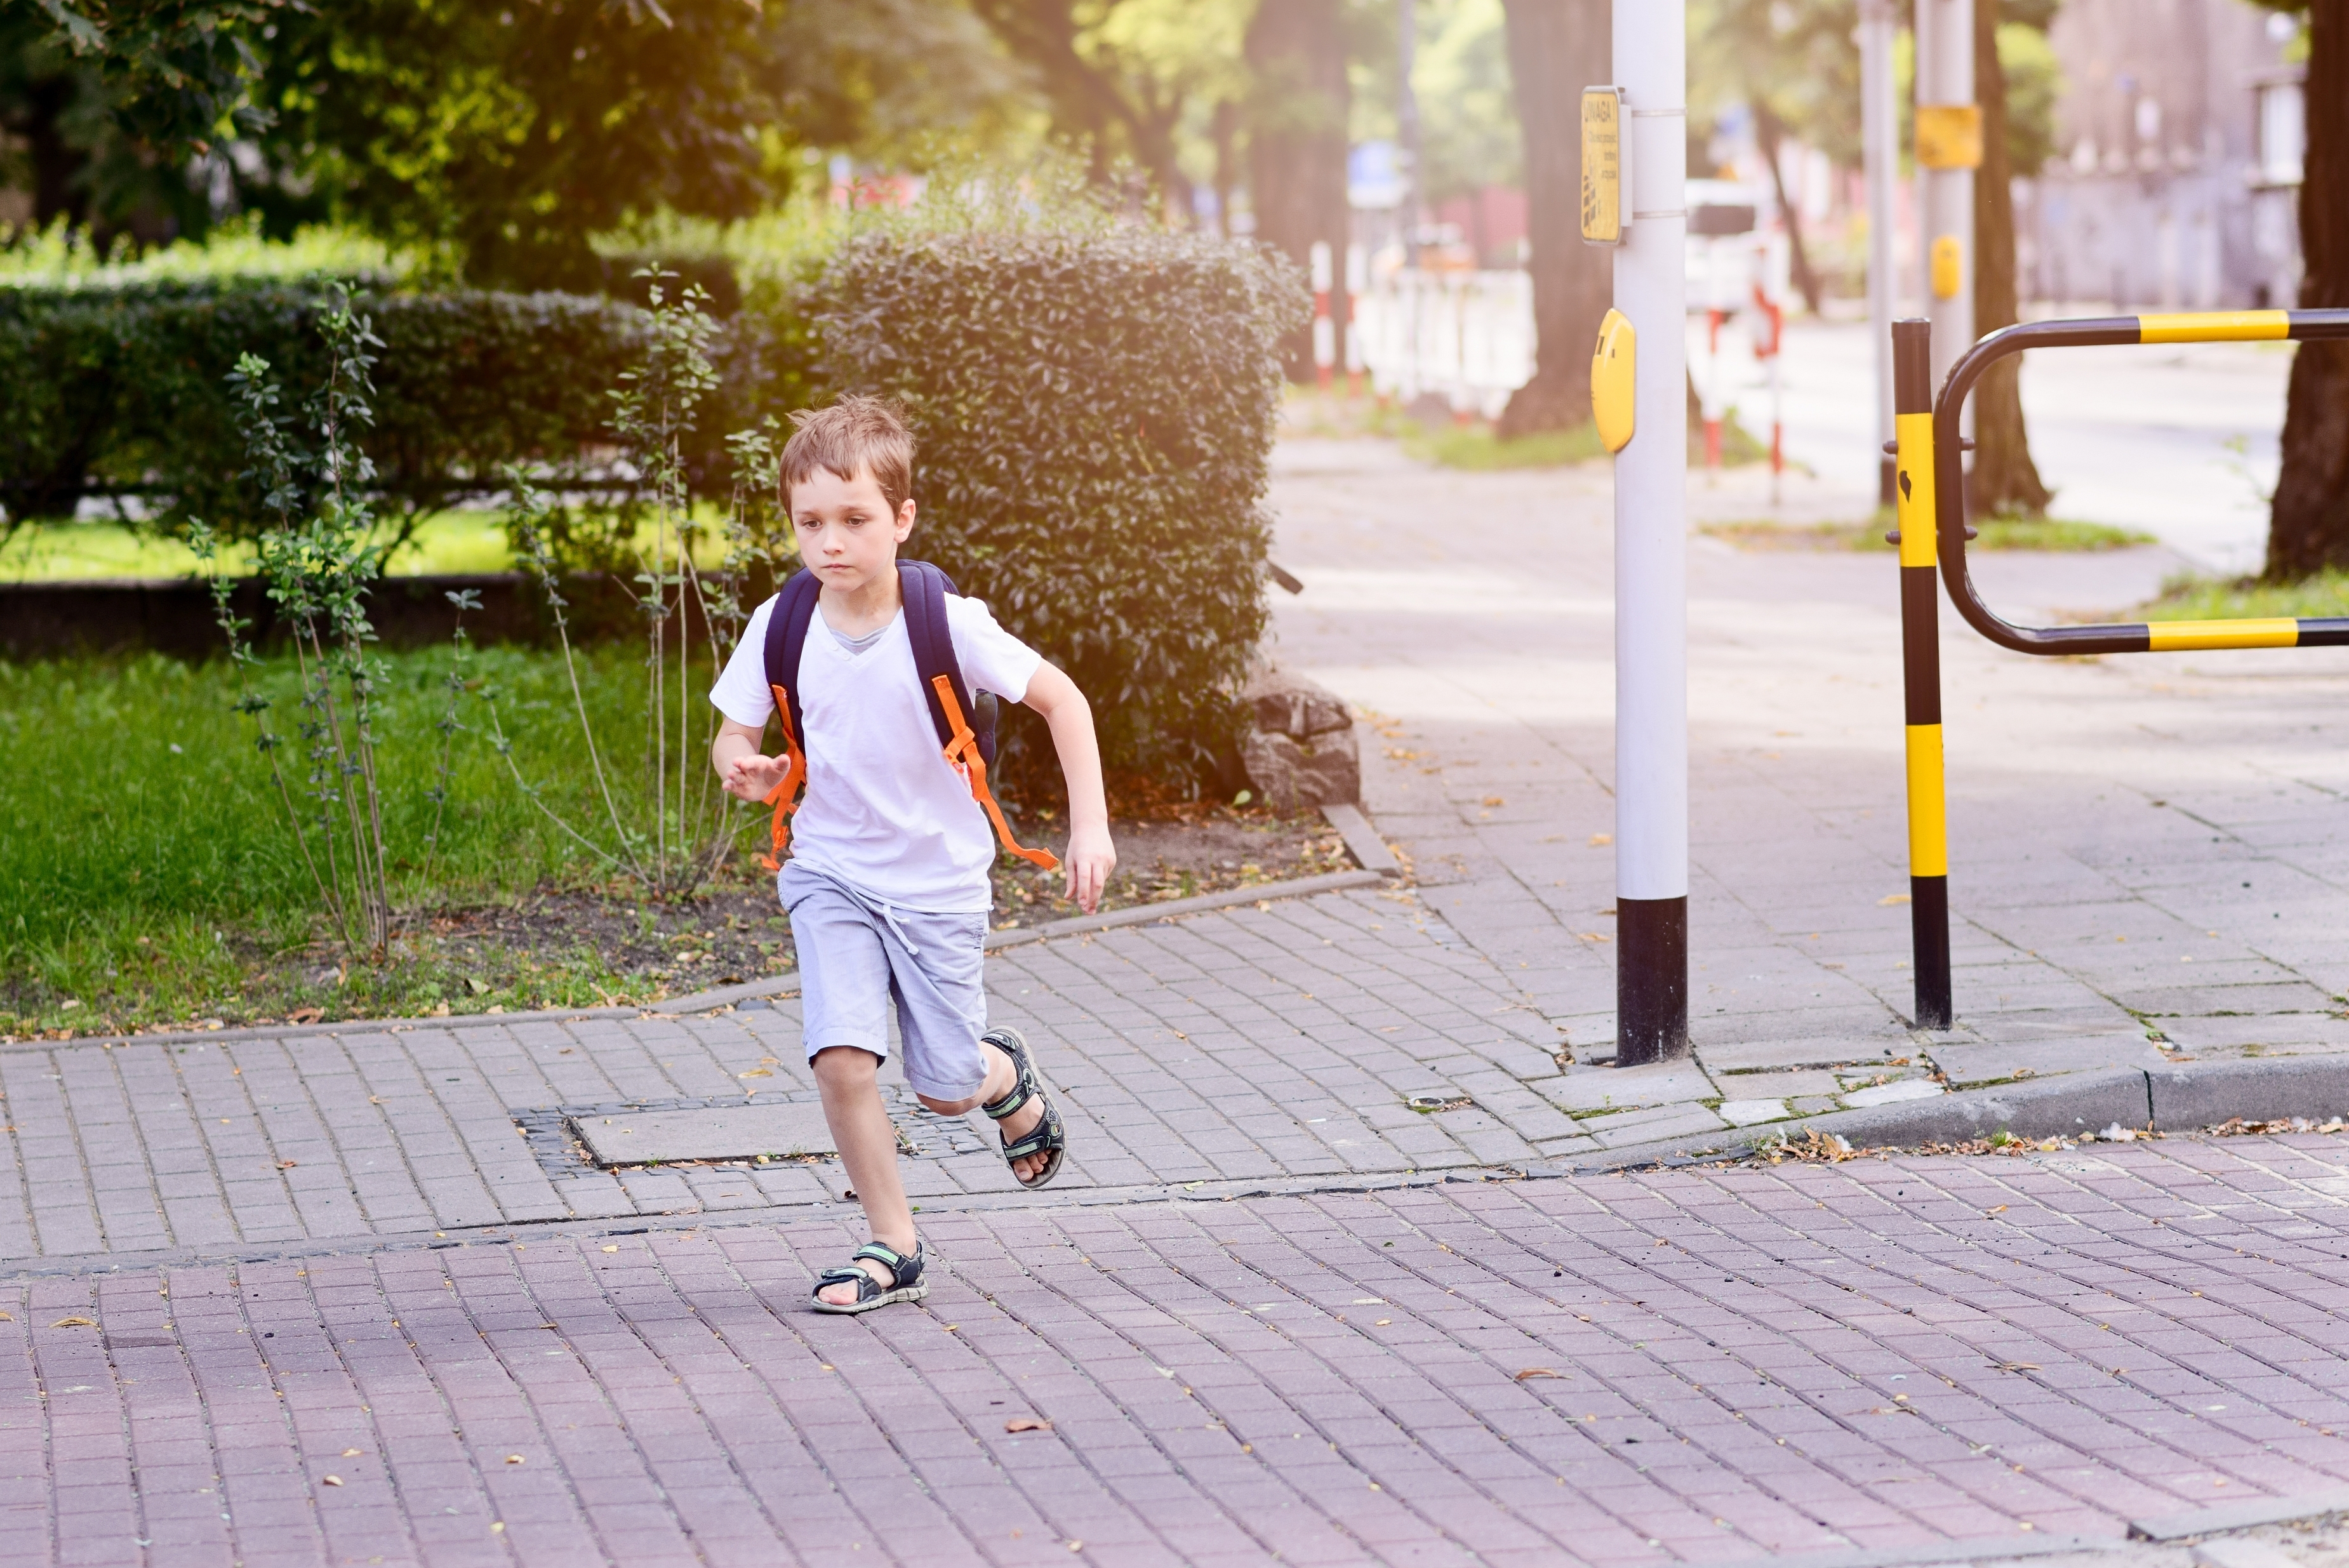 Pequeño escolar de 7 años corre por la calle | Fuente: Shutterstock.com